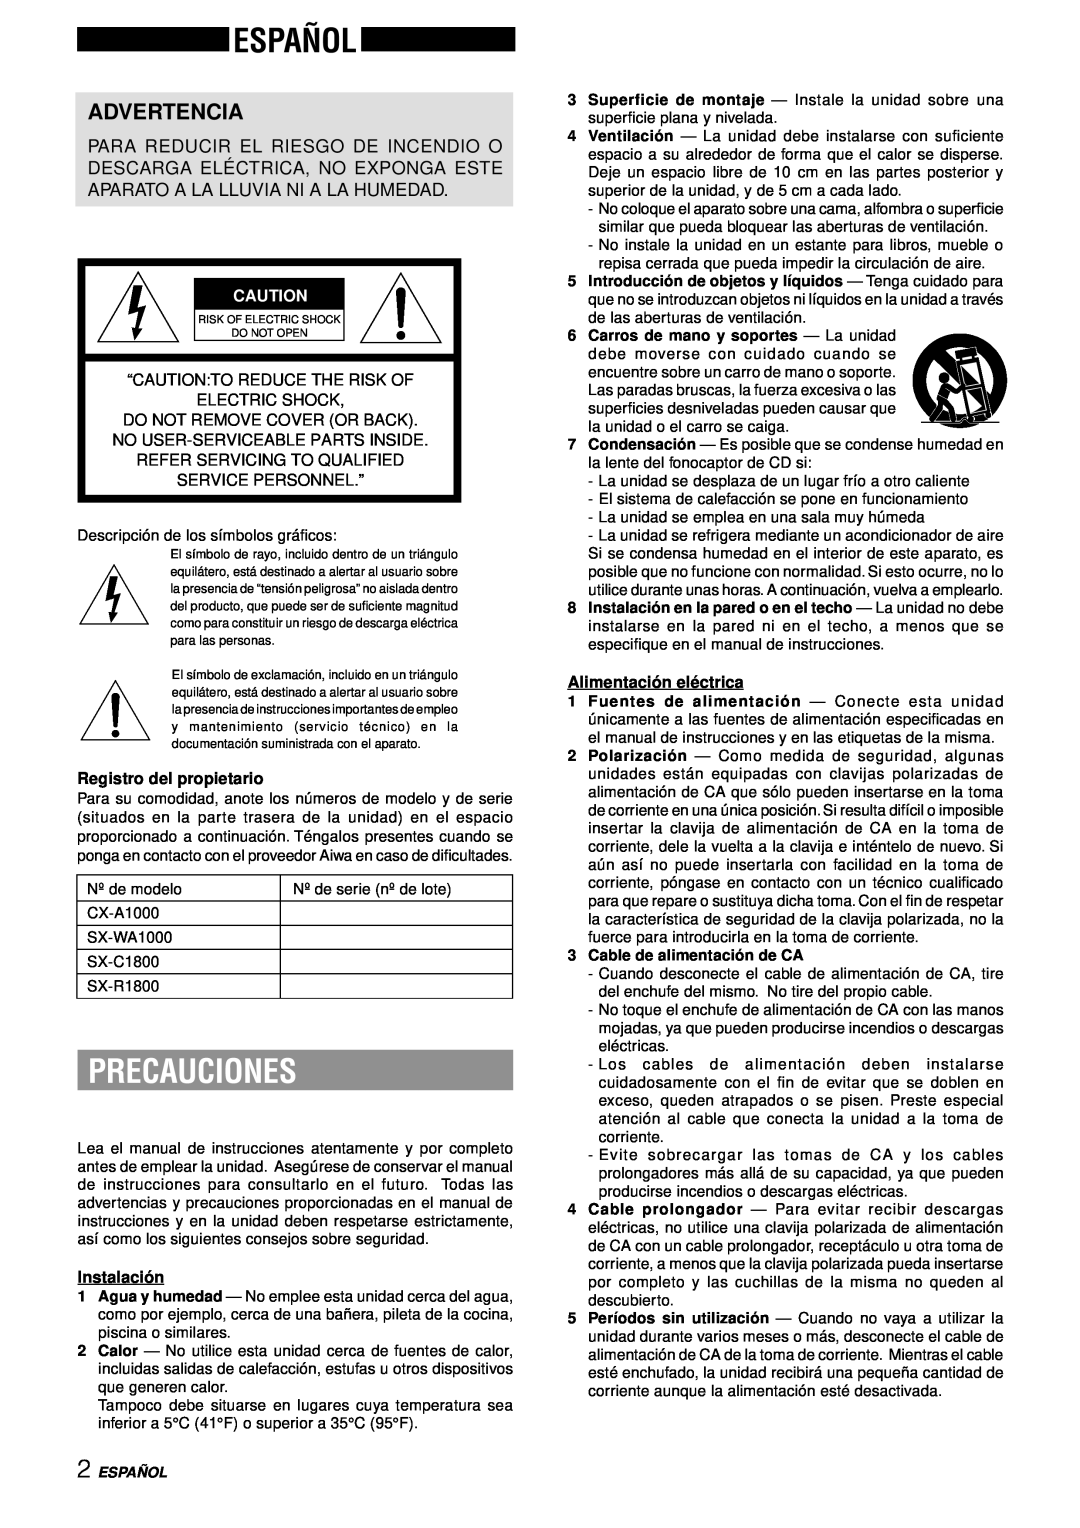 Aiwa XH-A1000 manual Español, Precauciones, Advertencia, Service Personnel.”, Registro del propietario, Instalació n 